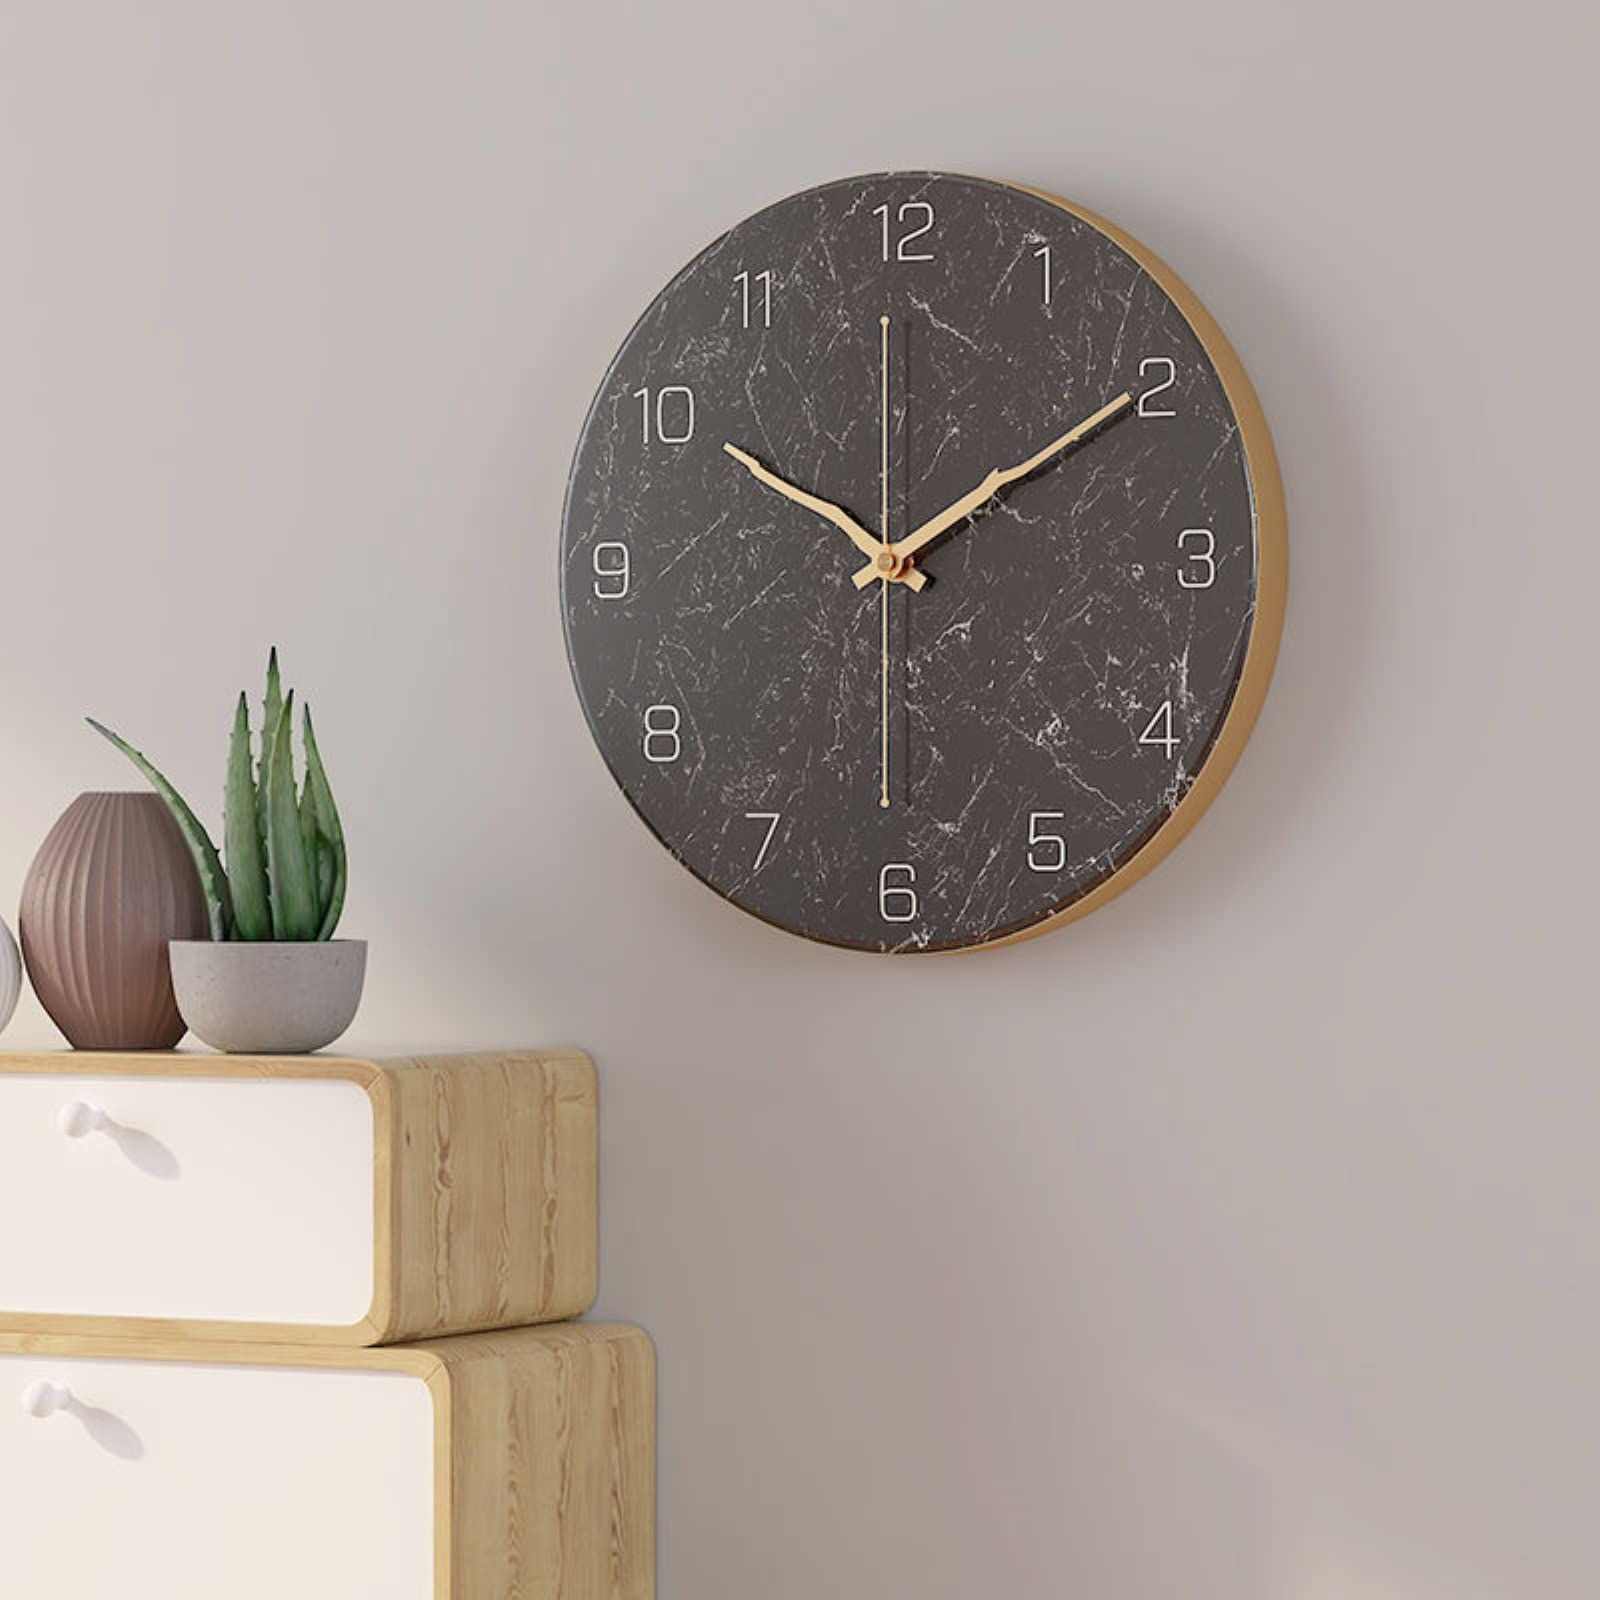 リビング 北欧 かっこいい レトロ 静音 見やすい アナログ 時計 壁掛け かけ時計 アート スイープ式 丸形 連続秒針 アンティーク 壁掛け時計  インテリア おしゃれ 赤褐色×グレー 掛け時計 高級 - メルカリ